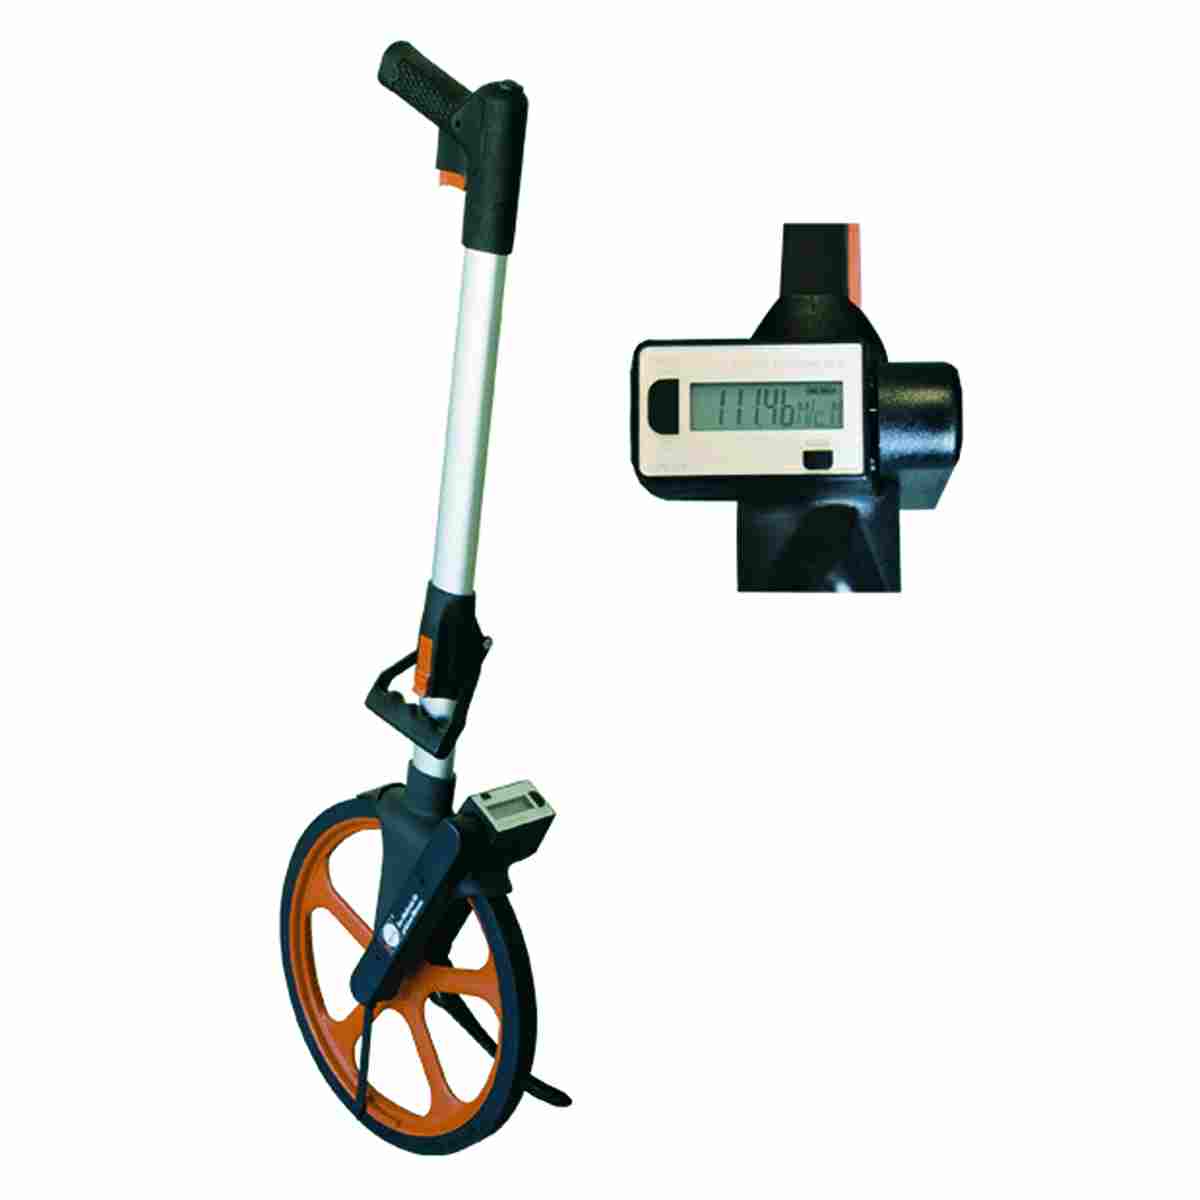 Leicht-Messrad - Digital, Gewicht 2,1 kg